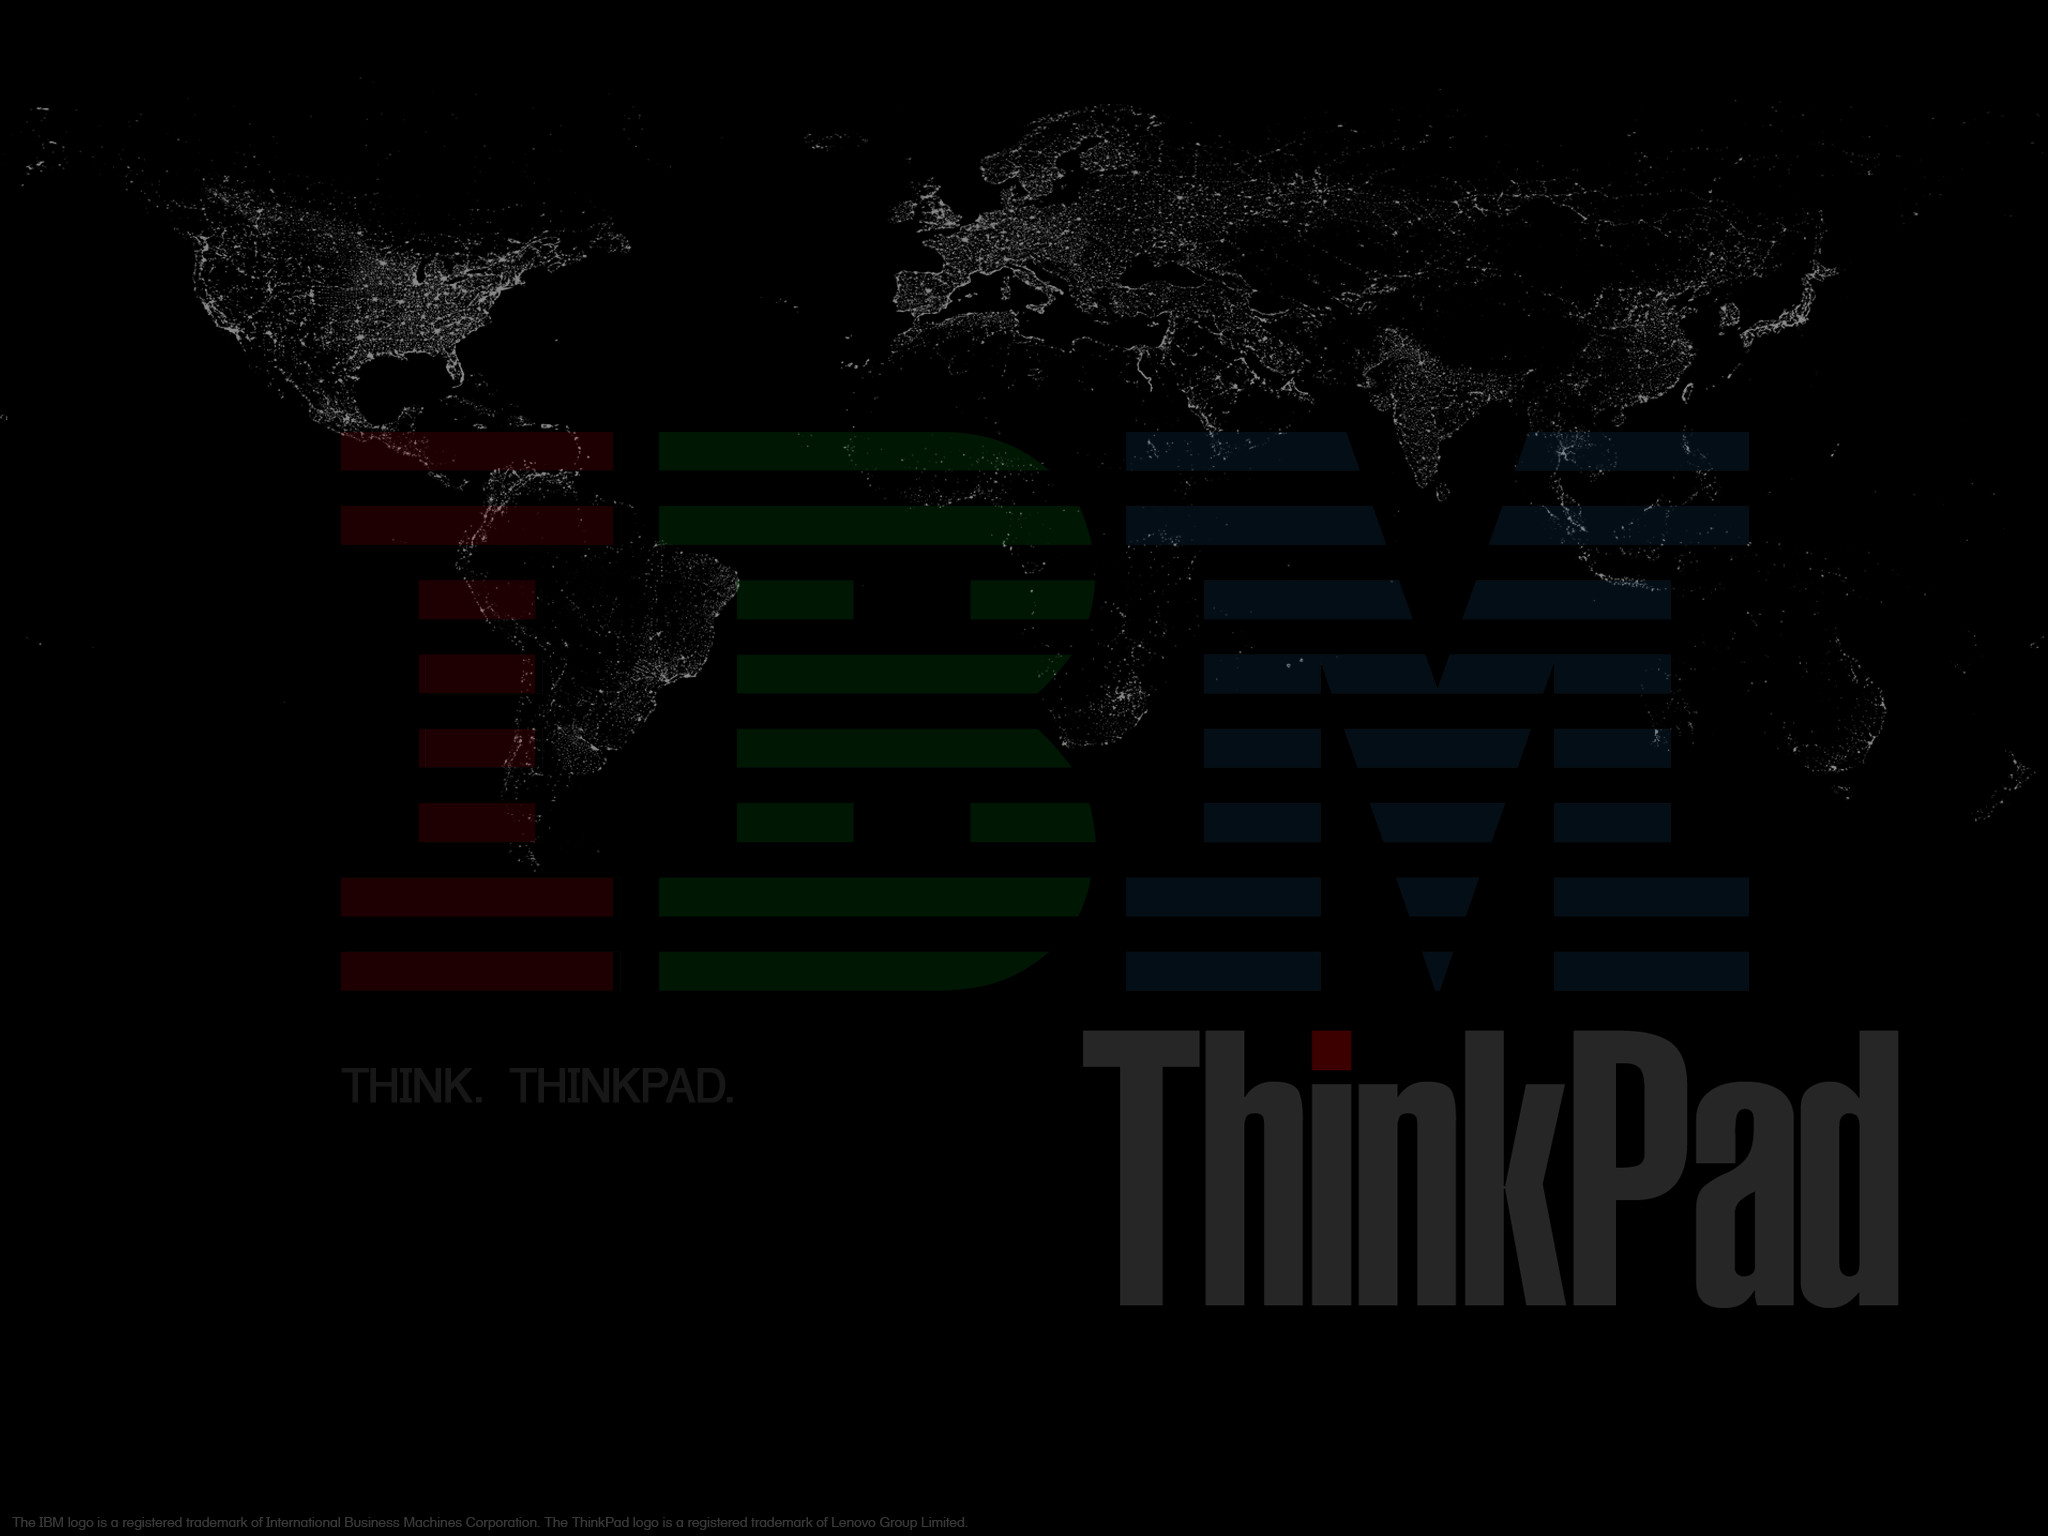 2048x1536 forum.thinkpads.com • View topic - Fresh ThinkPad Wallpaper